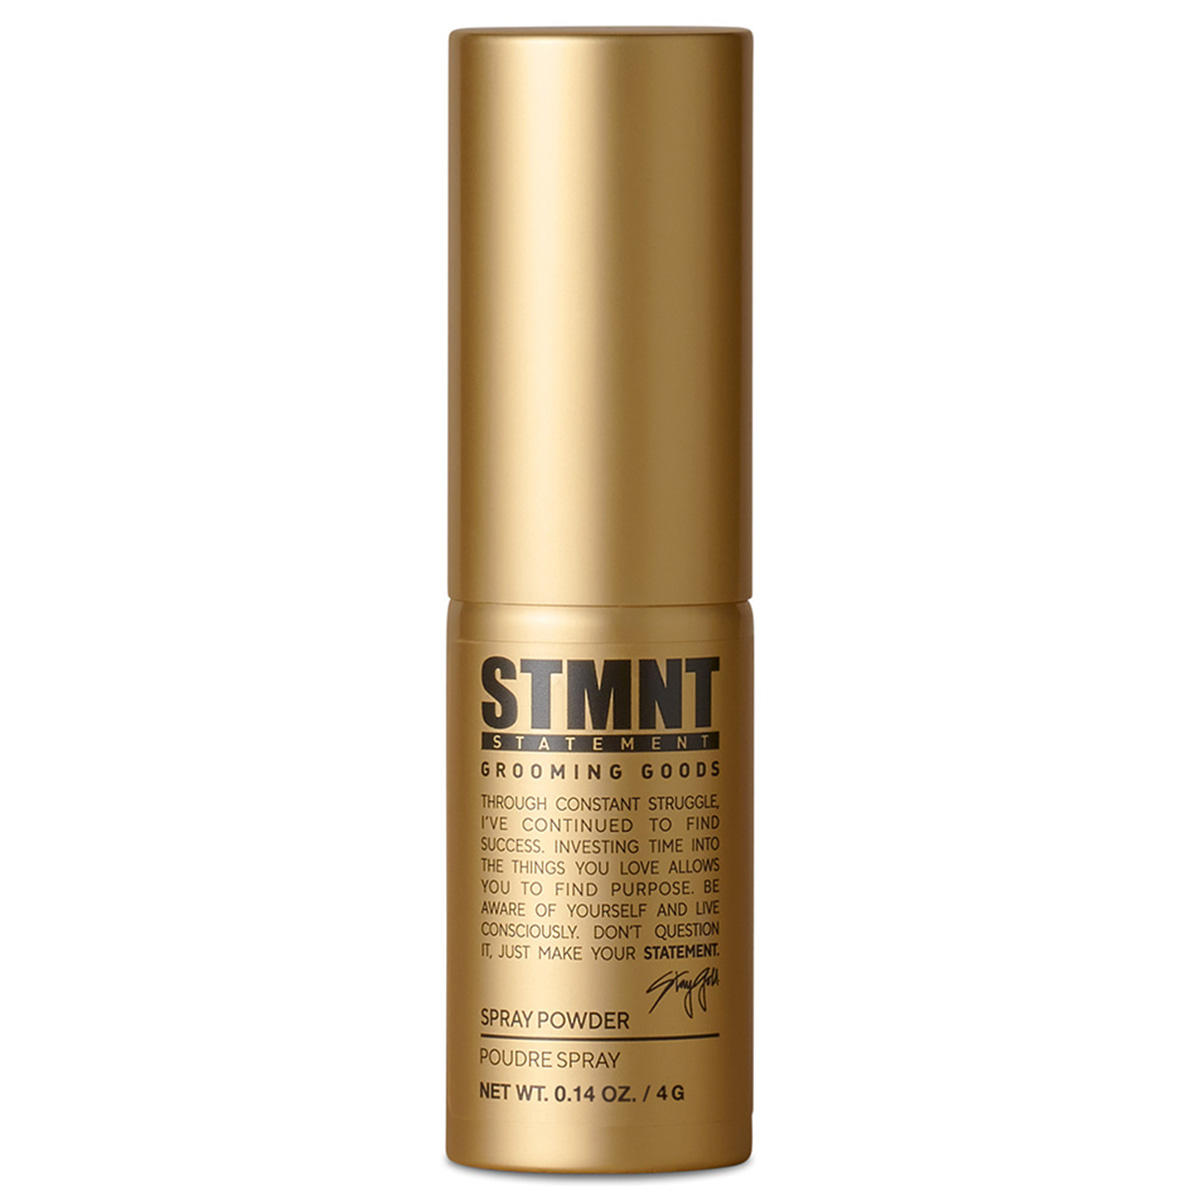 STMNT Spray Powder 4 g - 1